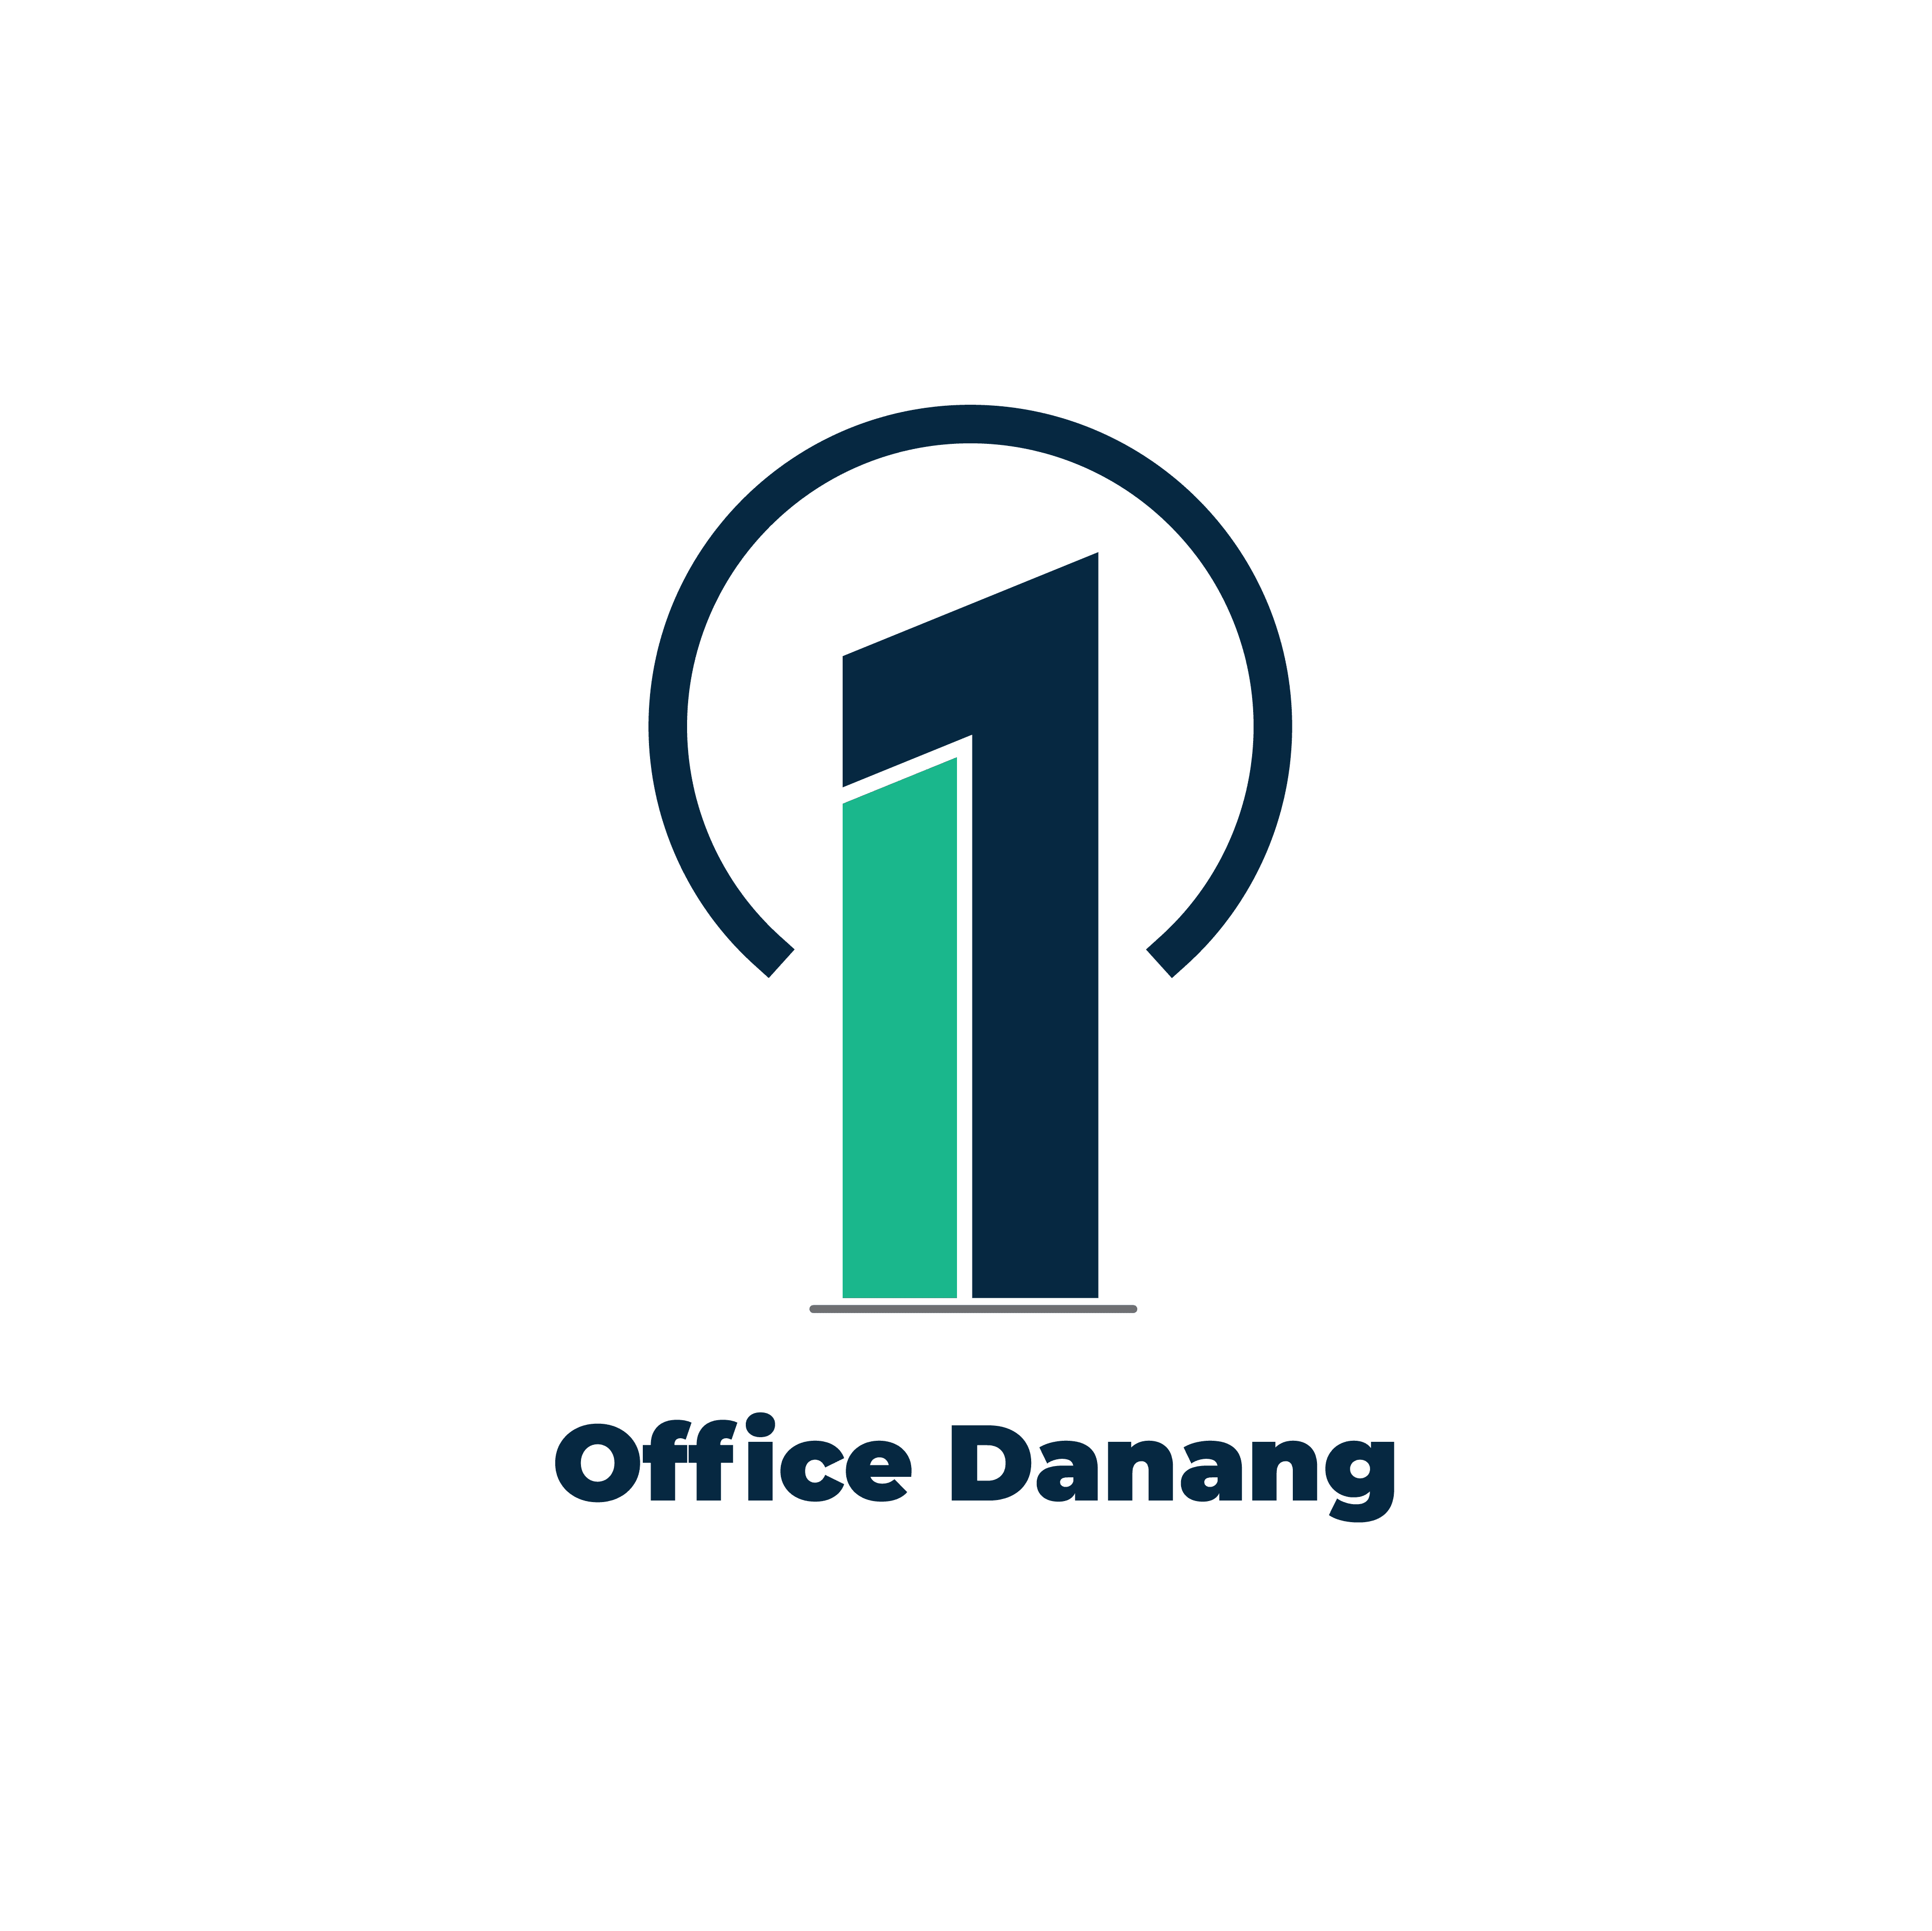 Office Danang – Dịch vụ tư vấn tìm kiếm văn phòng cho thuê tại Đà Nẵng-Tư vấn tìm kiếm văn phòng tại Đà Nẵng miễn phí